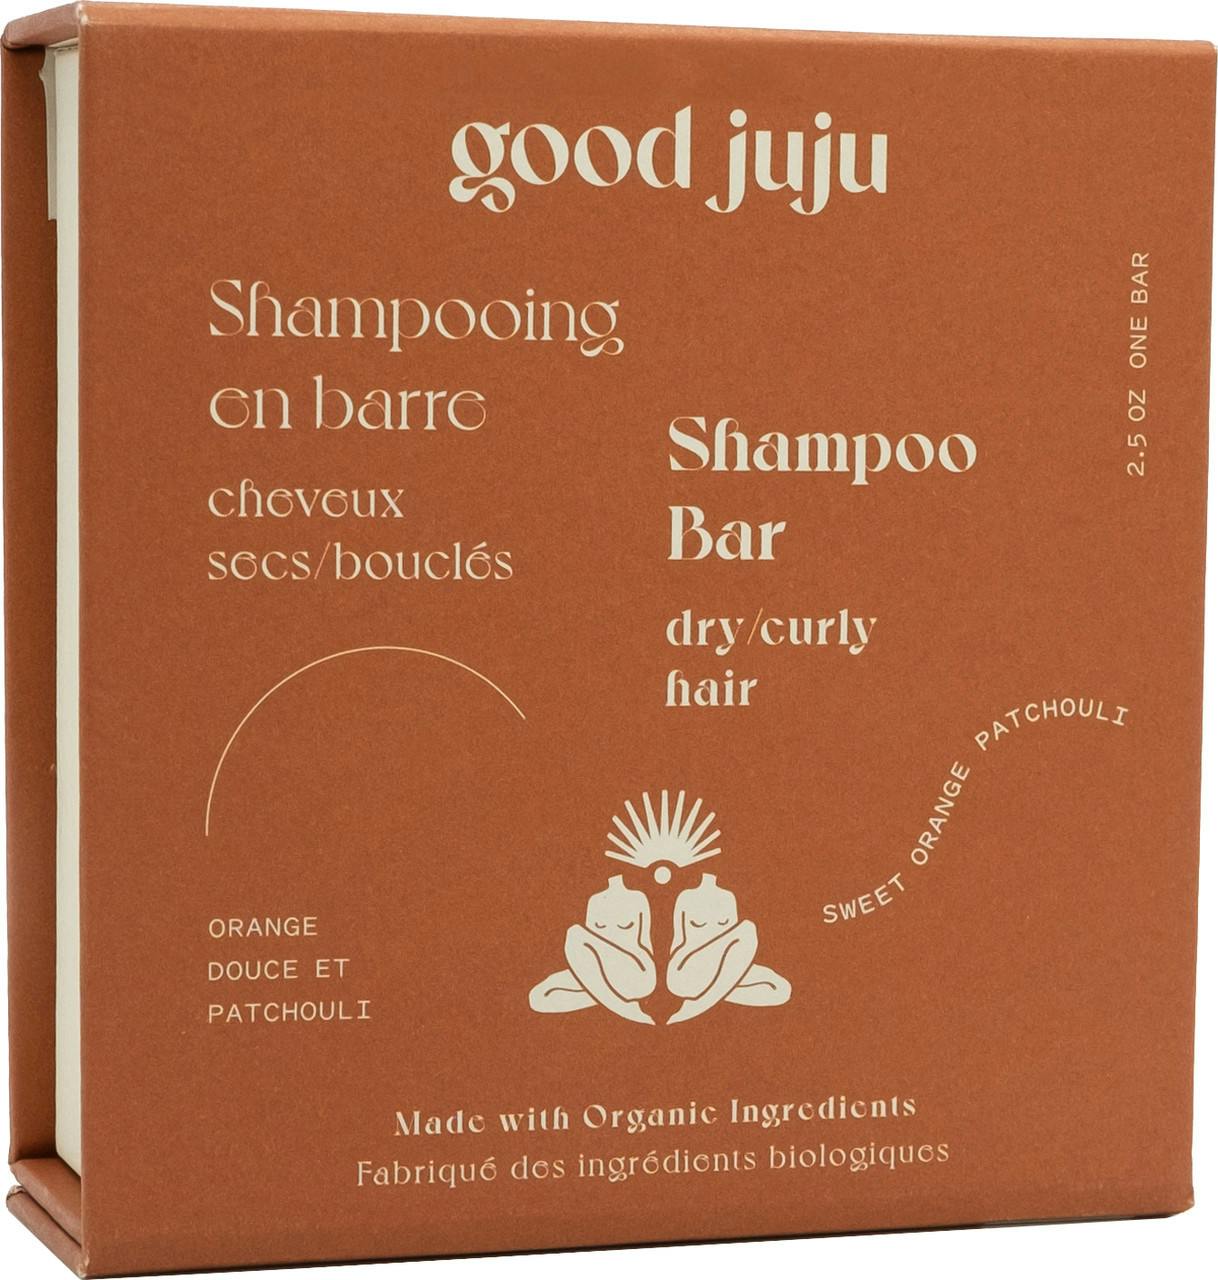 Shampoo Bar Dry/Curly Hair Orange